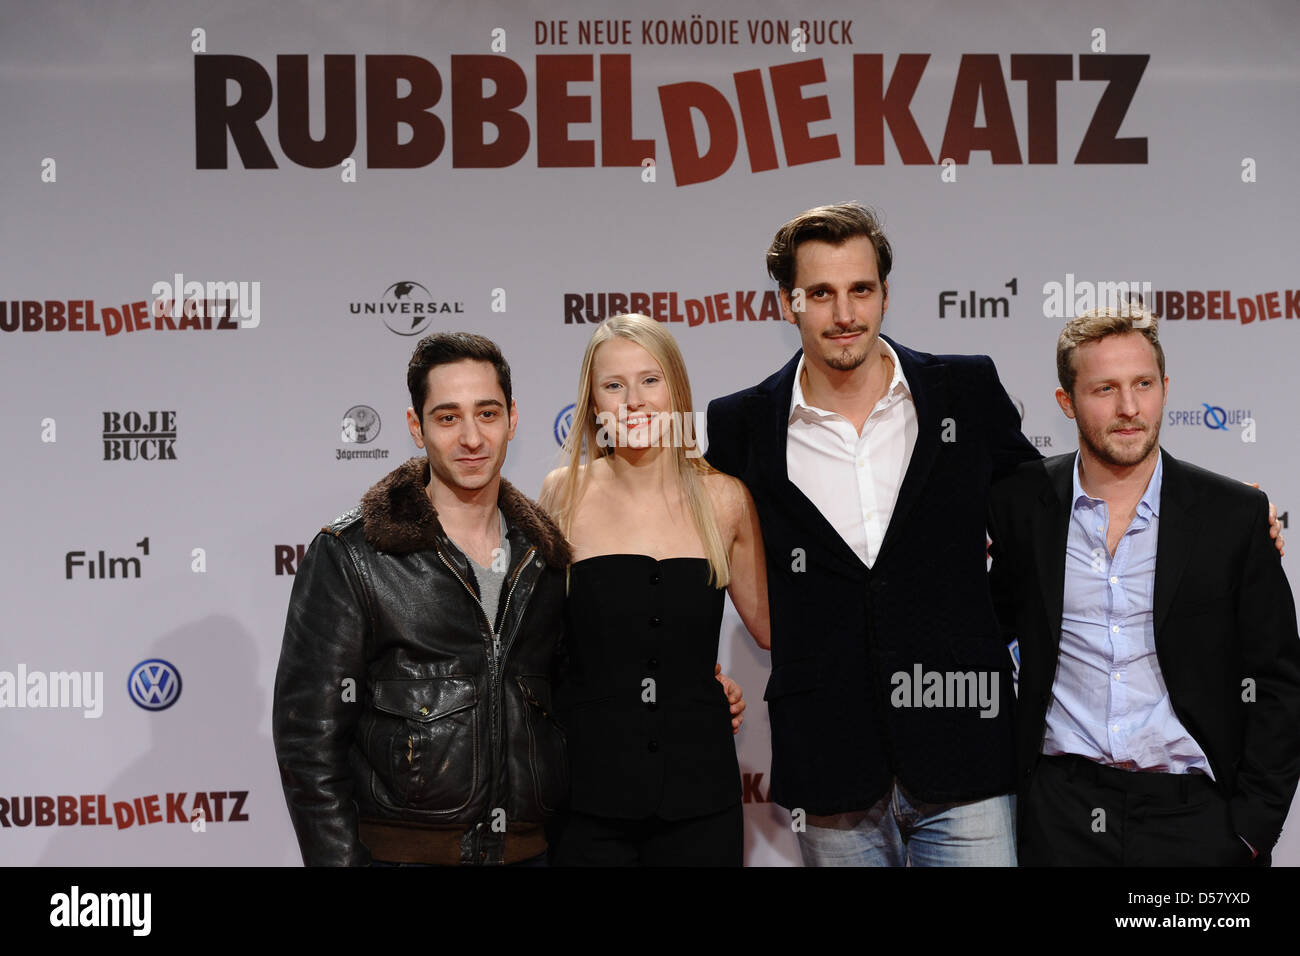 Denis Moschitto, Susanne Bormann, Max von Thun und Maximilian Brückner bei der Premiere von "Rubbeldiekatz" im Cinemaxx Stockfoto